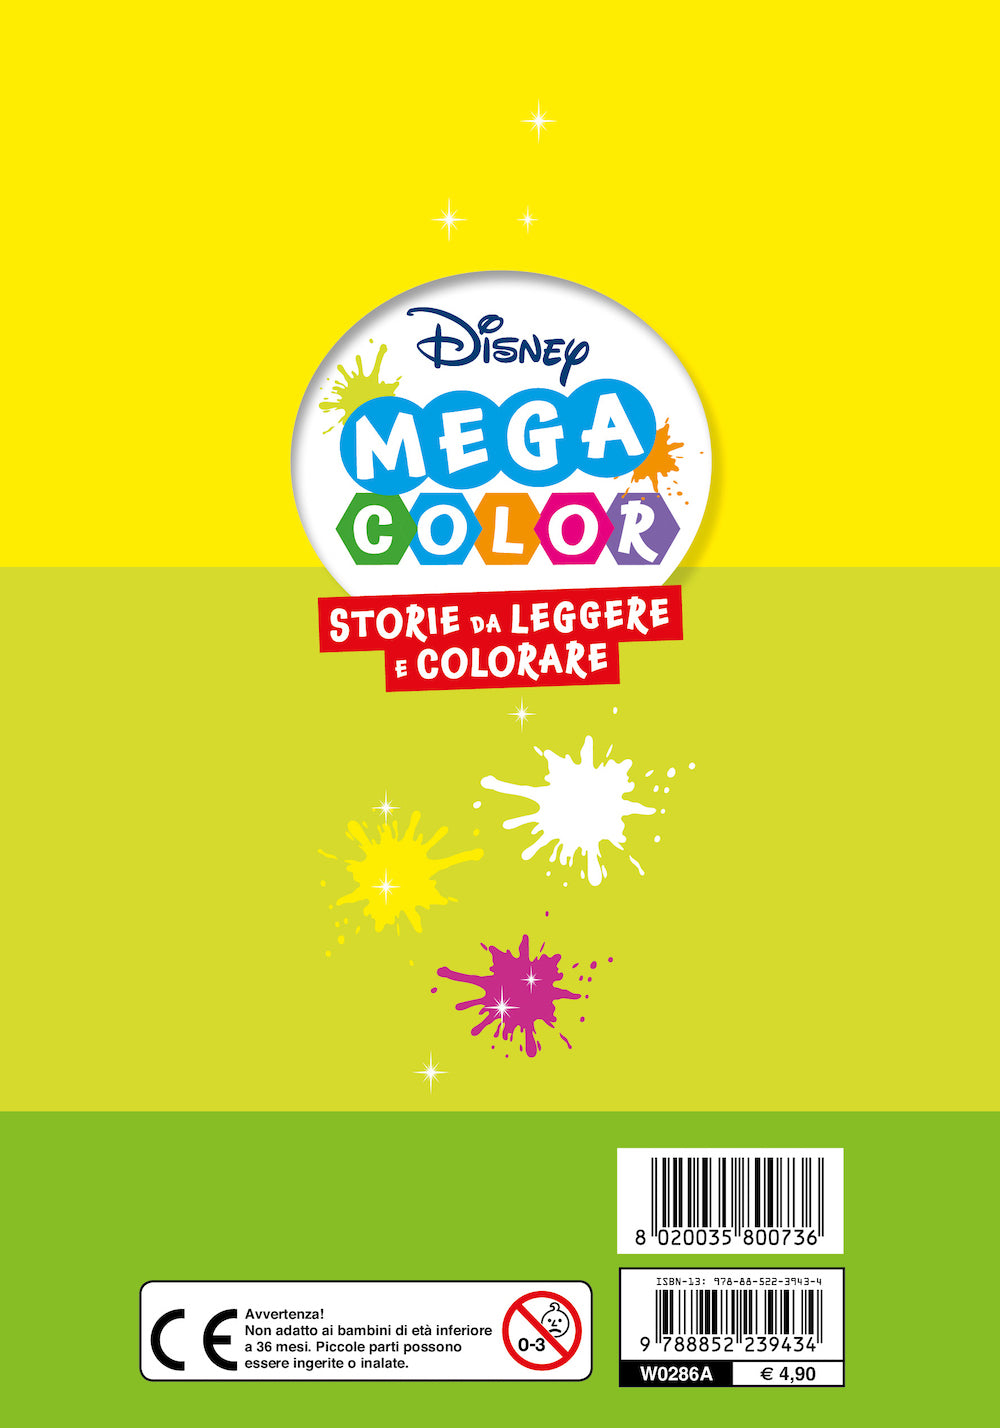 Disney Mega Color::Storie da leggere e colorare